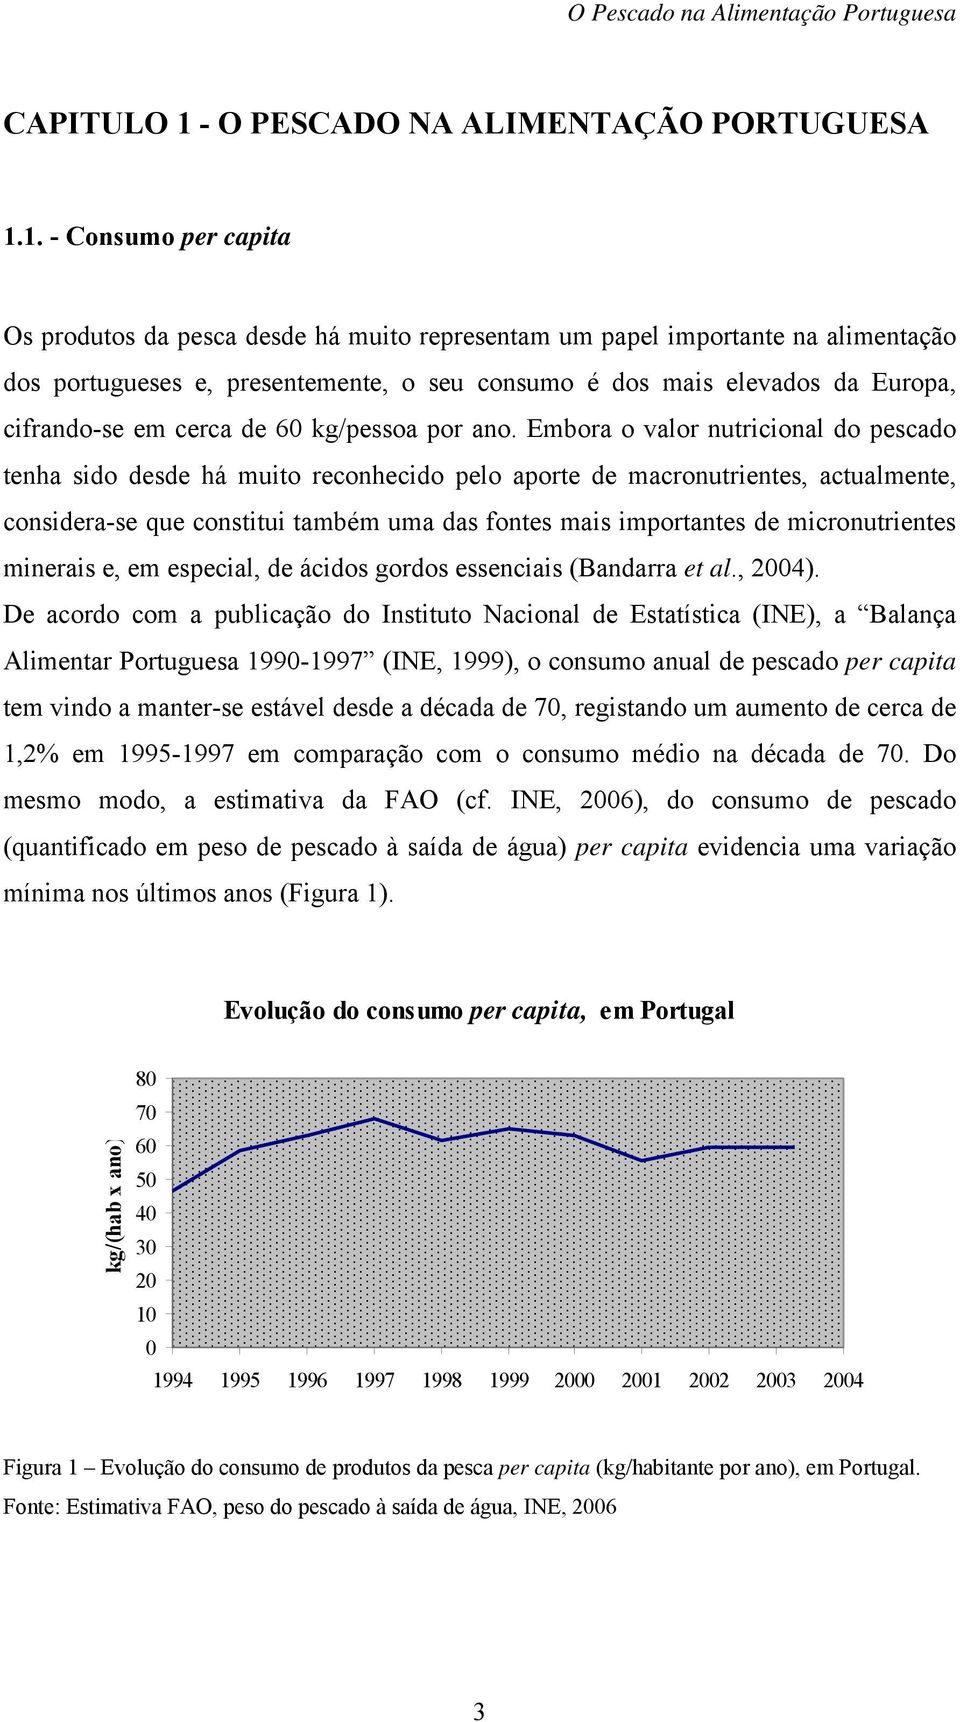 1. - Consumo per capita Os produtos da pesca desde há muito representam um papel importante na alimentação dos portugueses e, presentemente, o seu consumo é dos mais elevados da Europa, cifrando-se